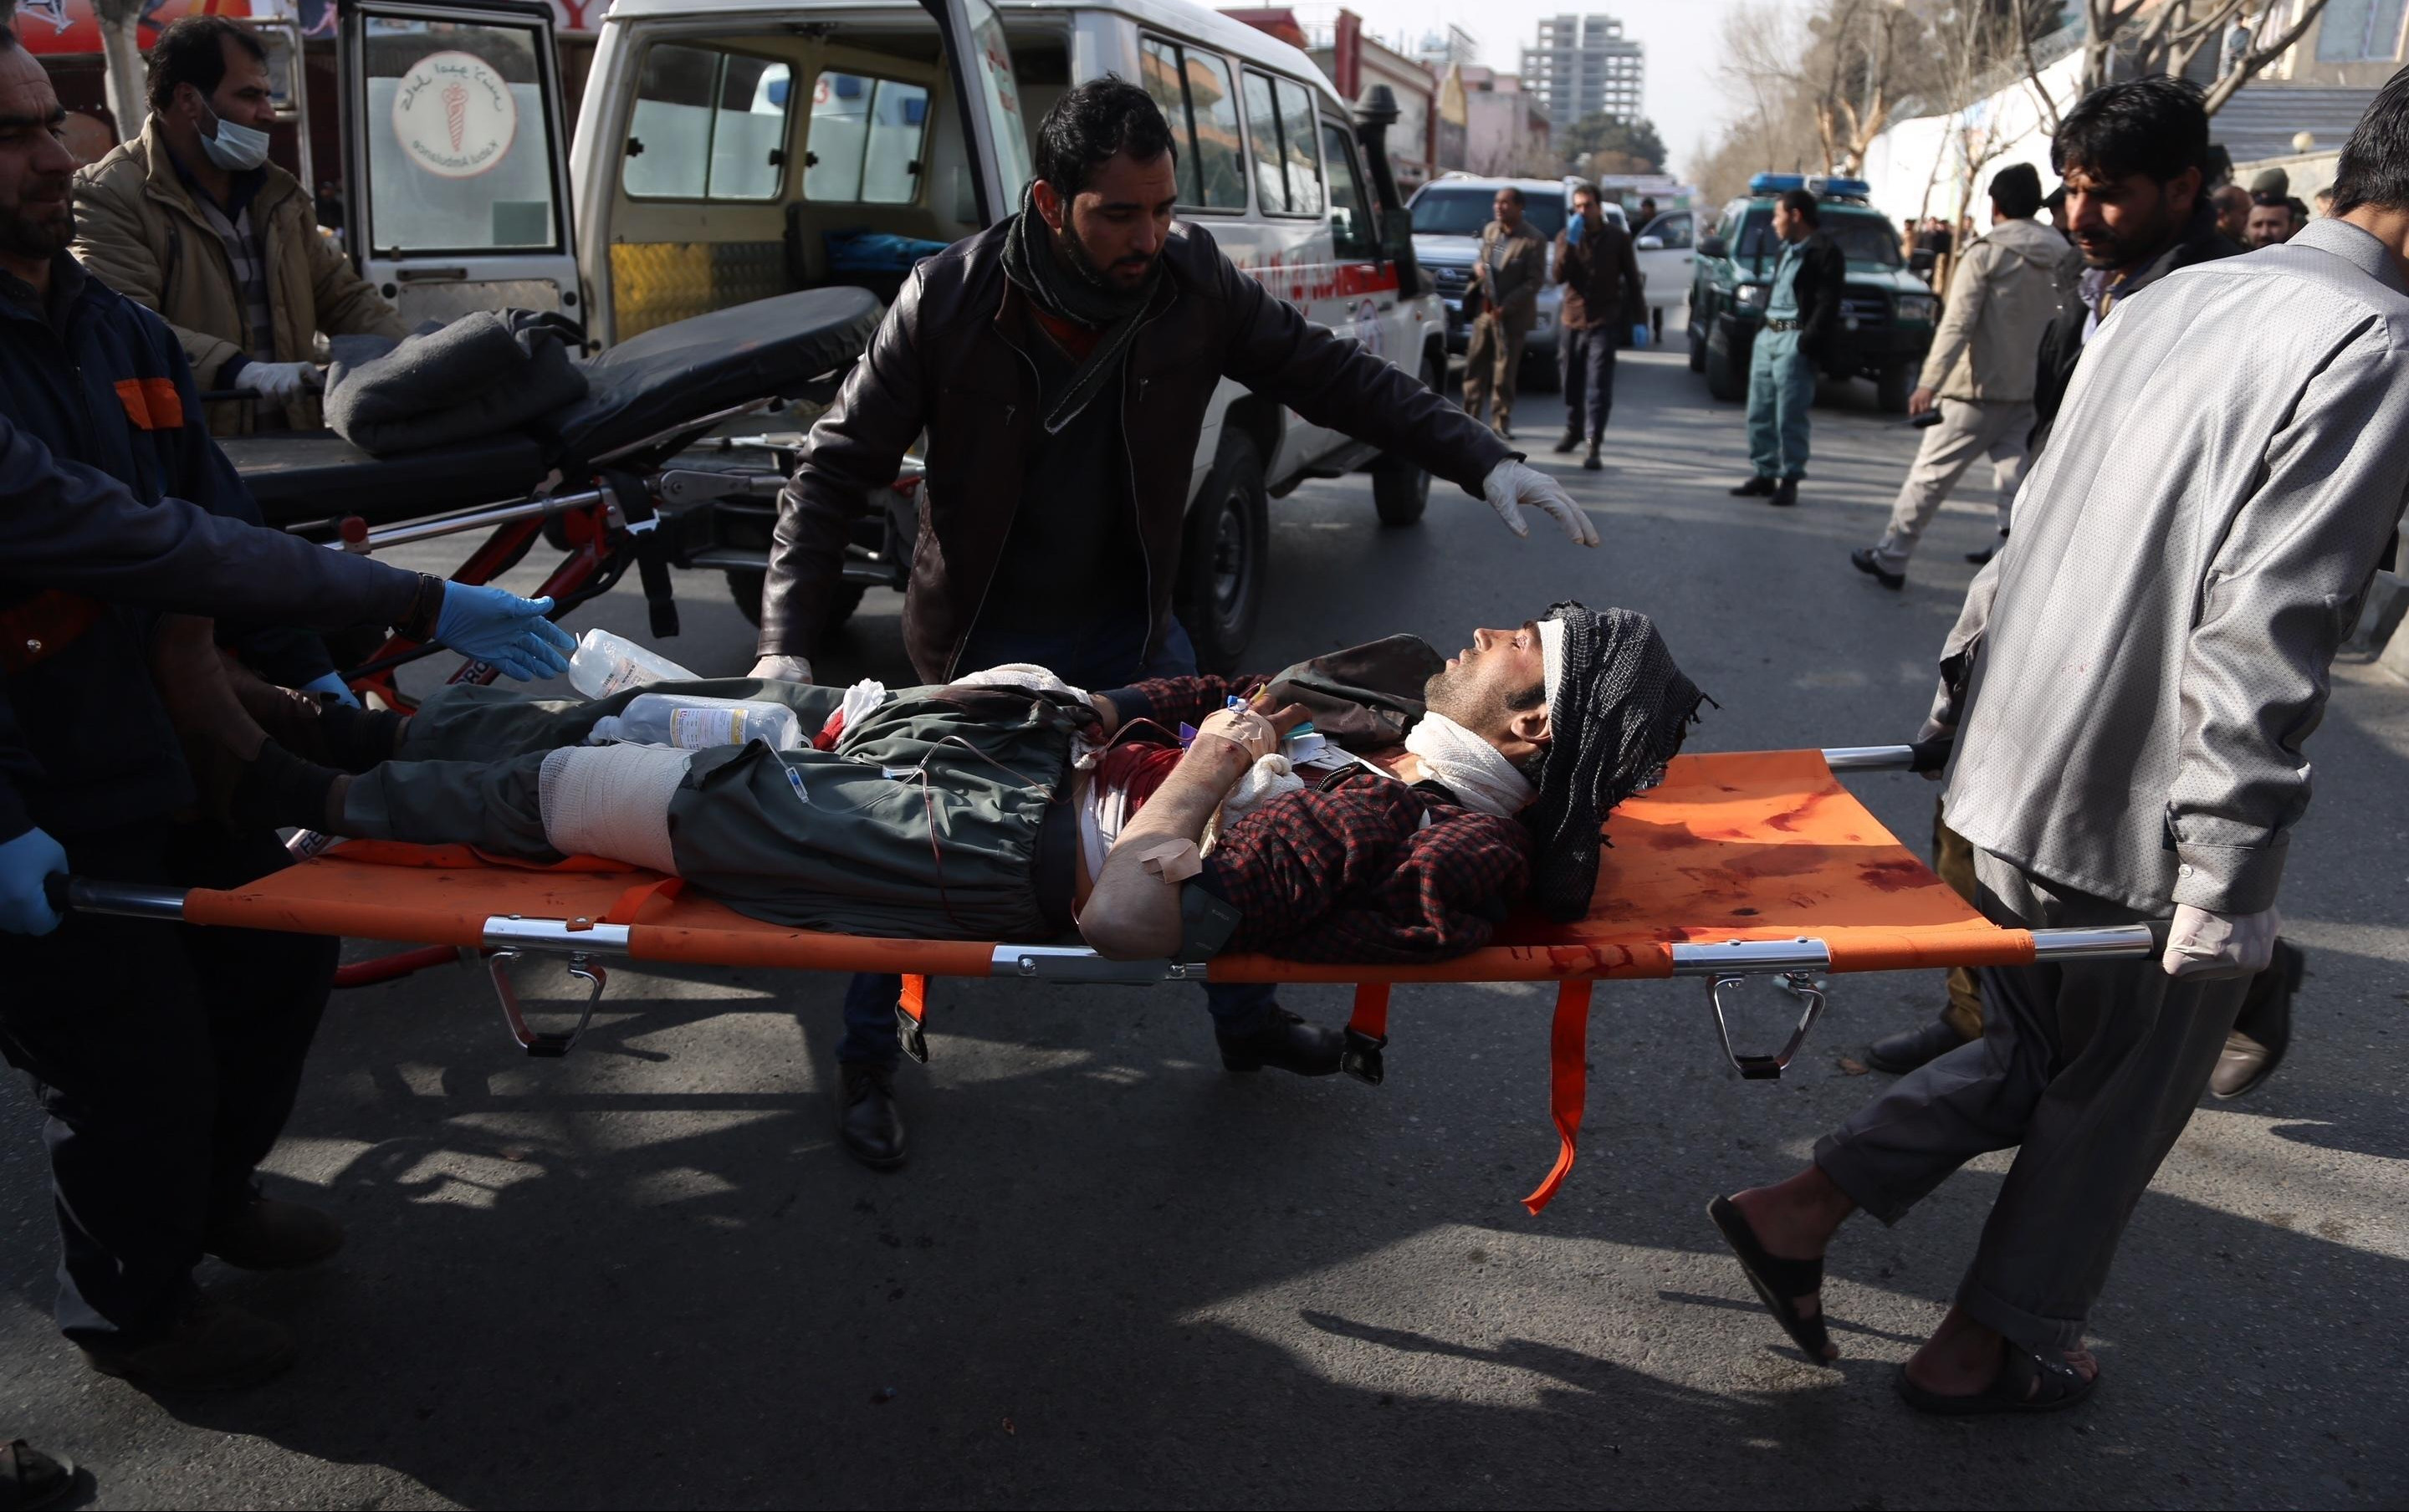 UŽAS! NAJMANJE 34 OSOBE POGINULE U EKSPLOZIJAMA! Napadi bombaša samoubica u Avganistanu